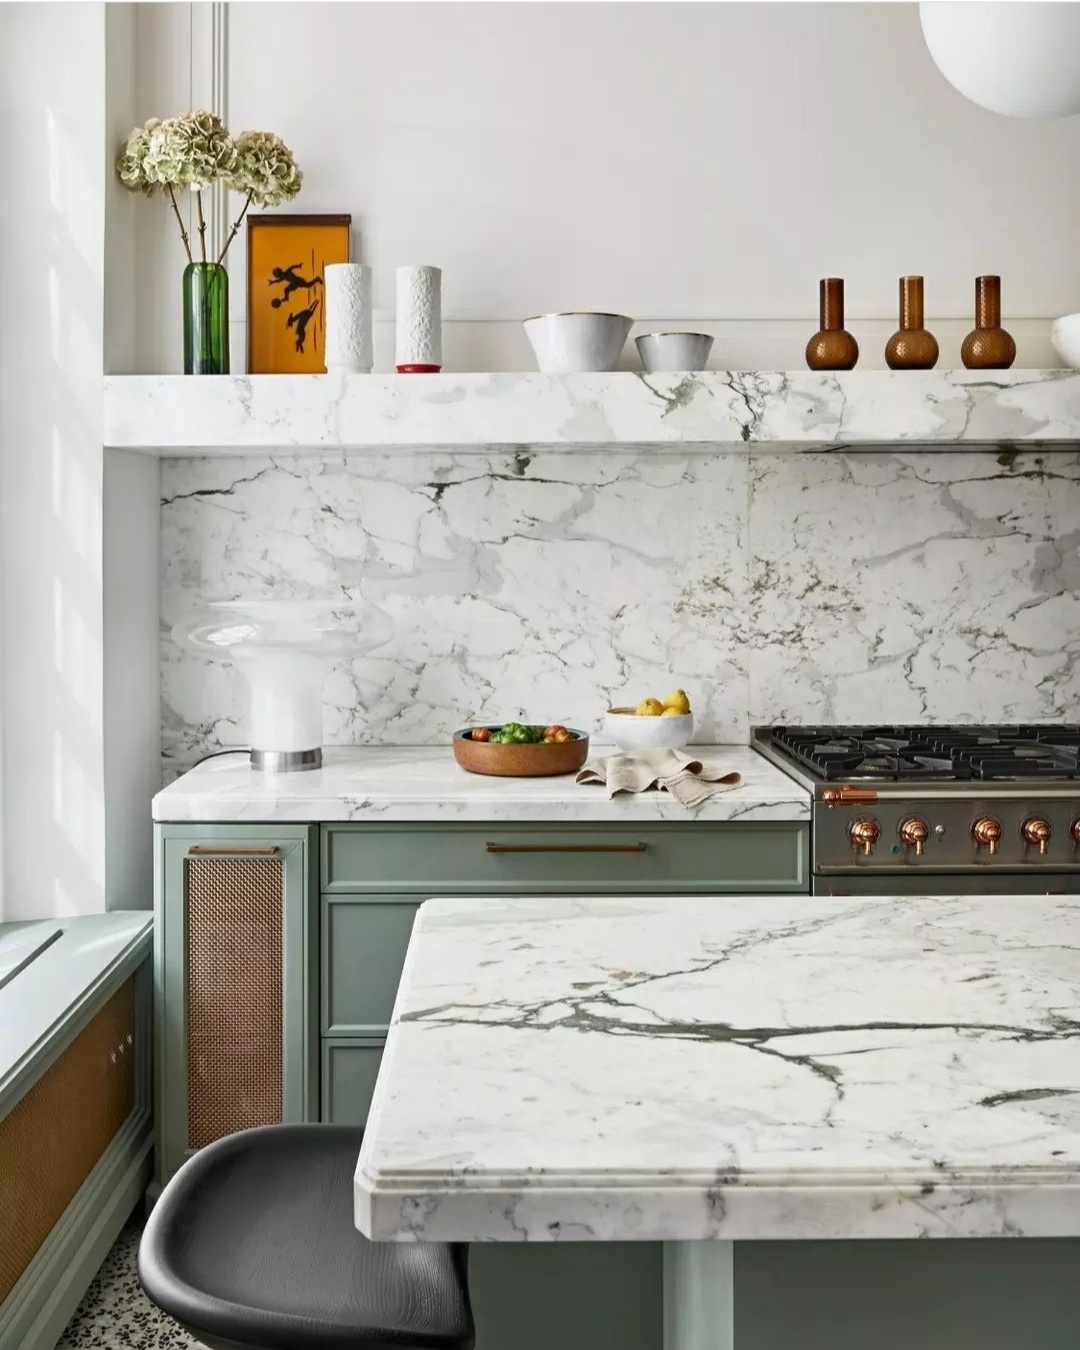 Las piedras como el mármol, el cemento o el granito toman protagonismo en cocinas y cuartos de baño.